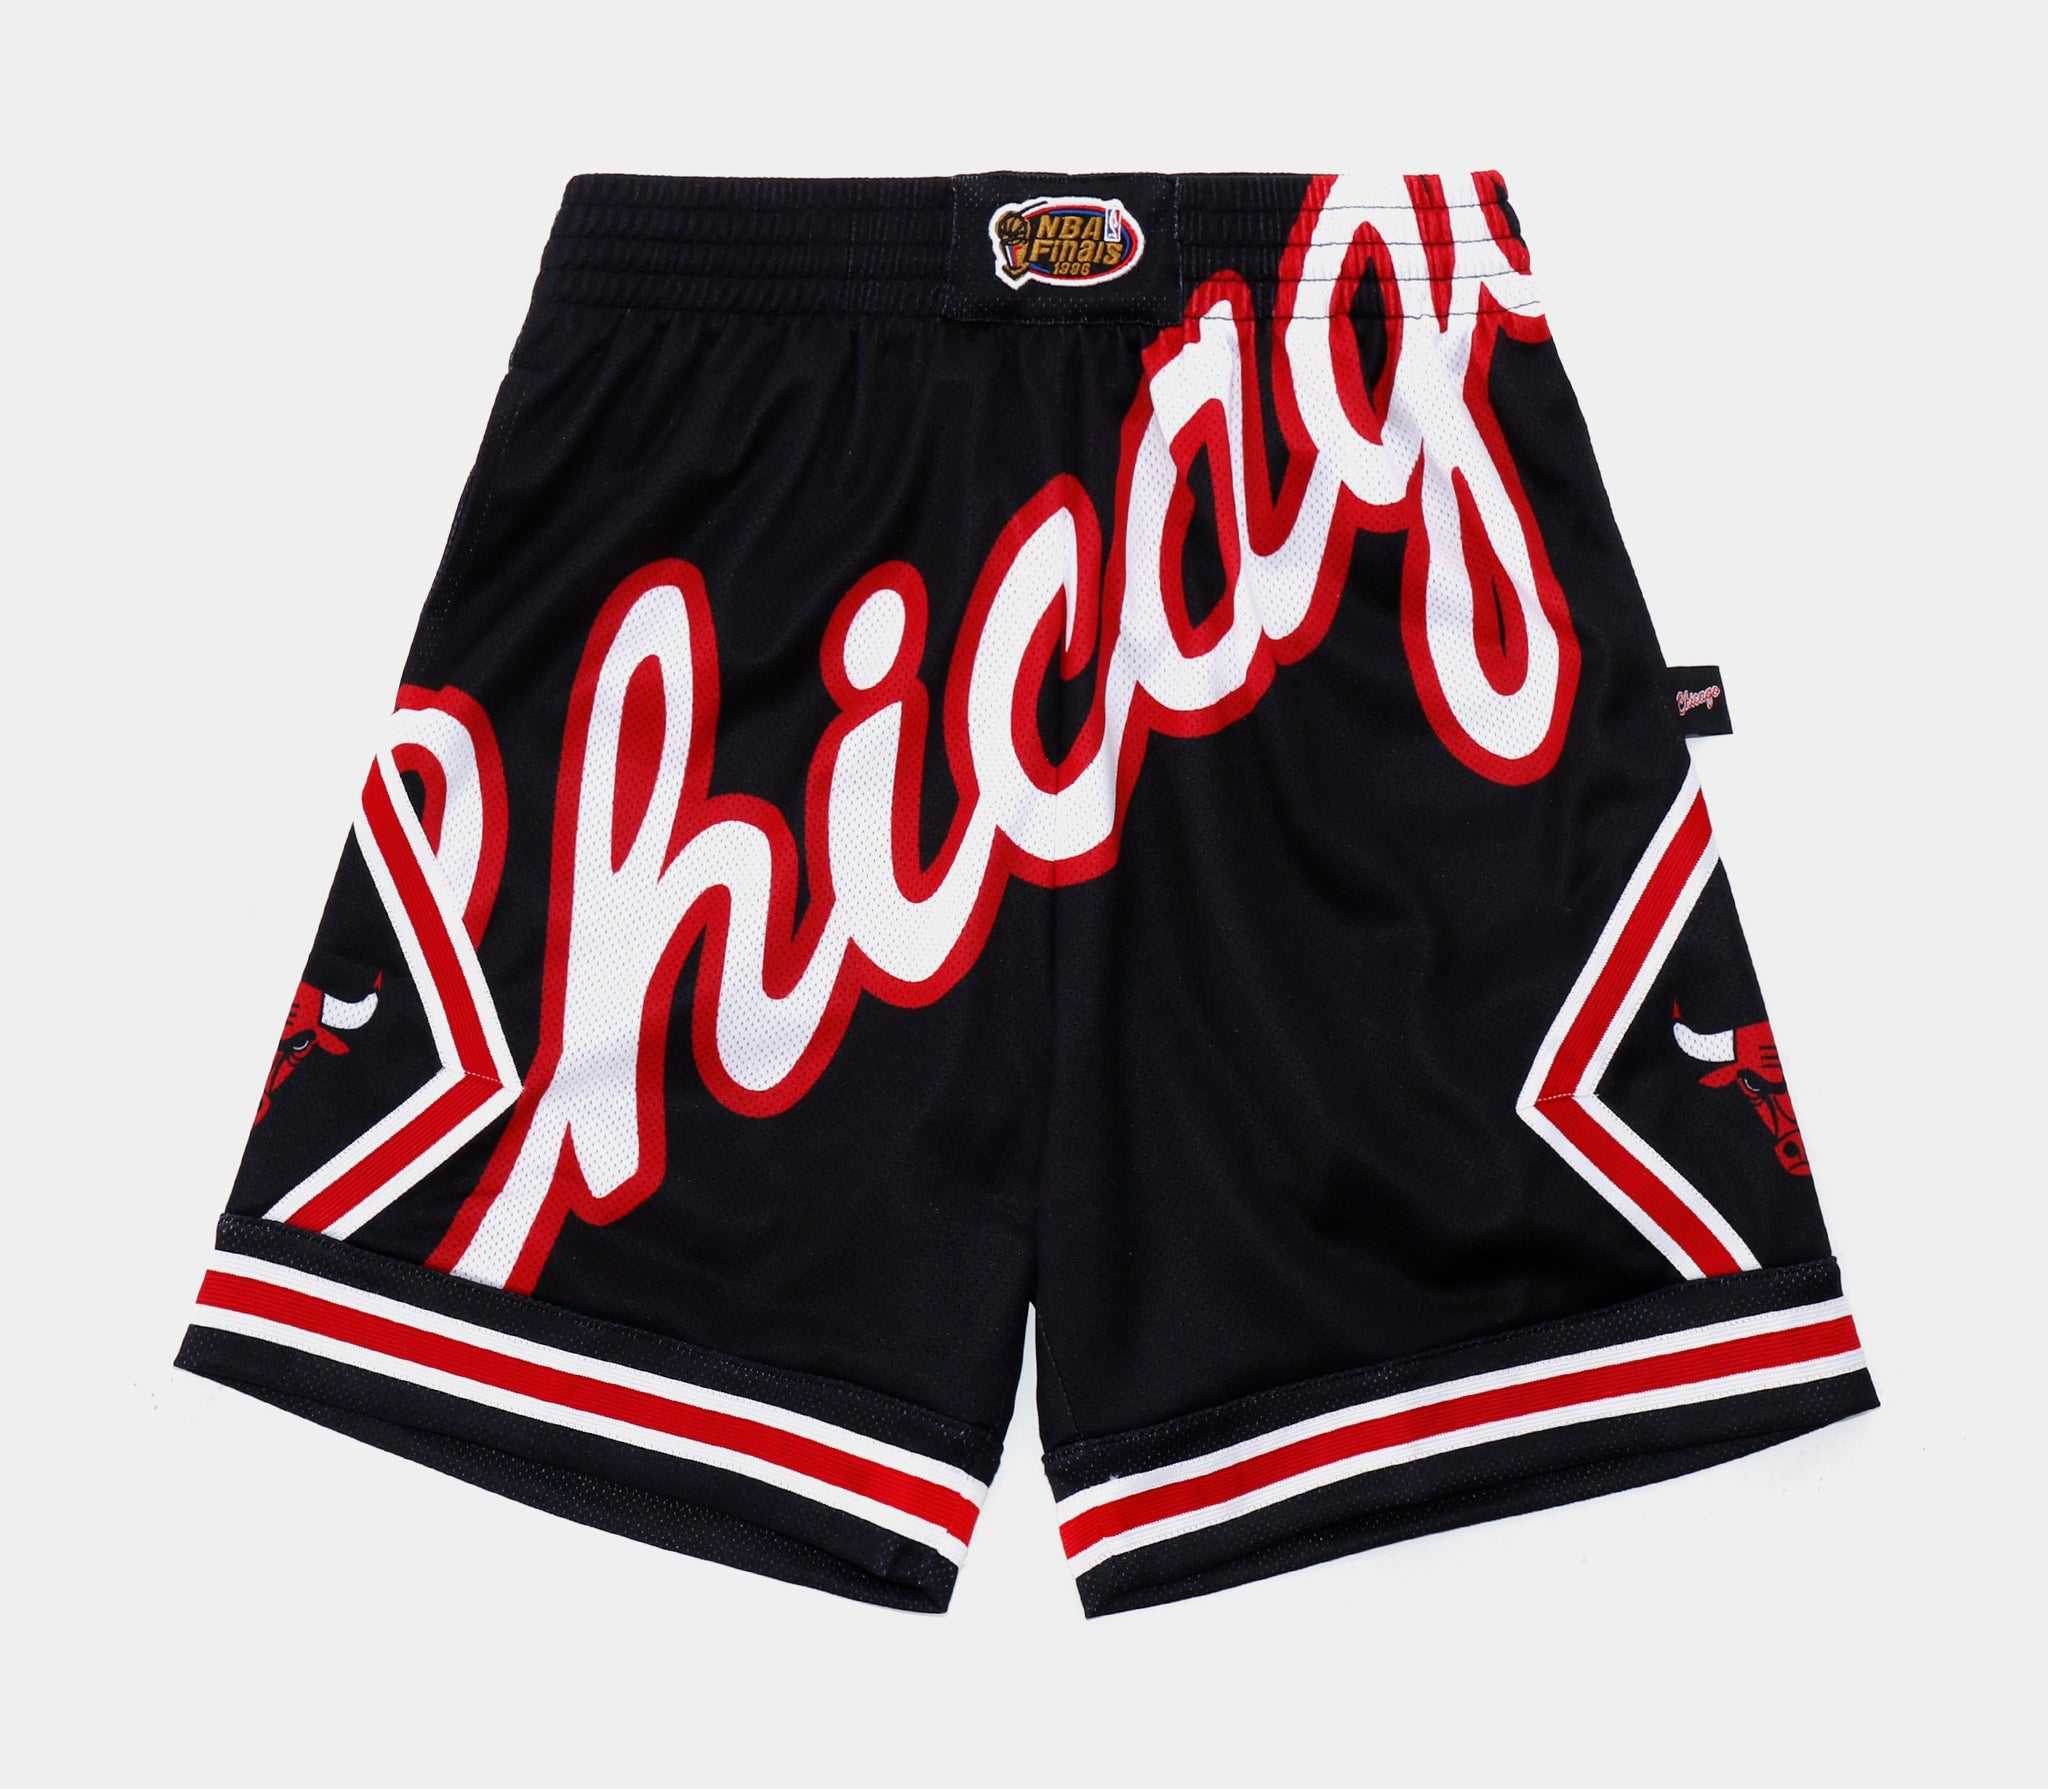 Bulls Shorts 